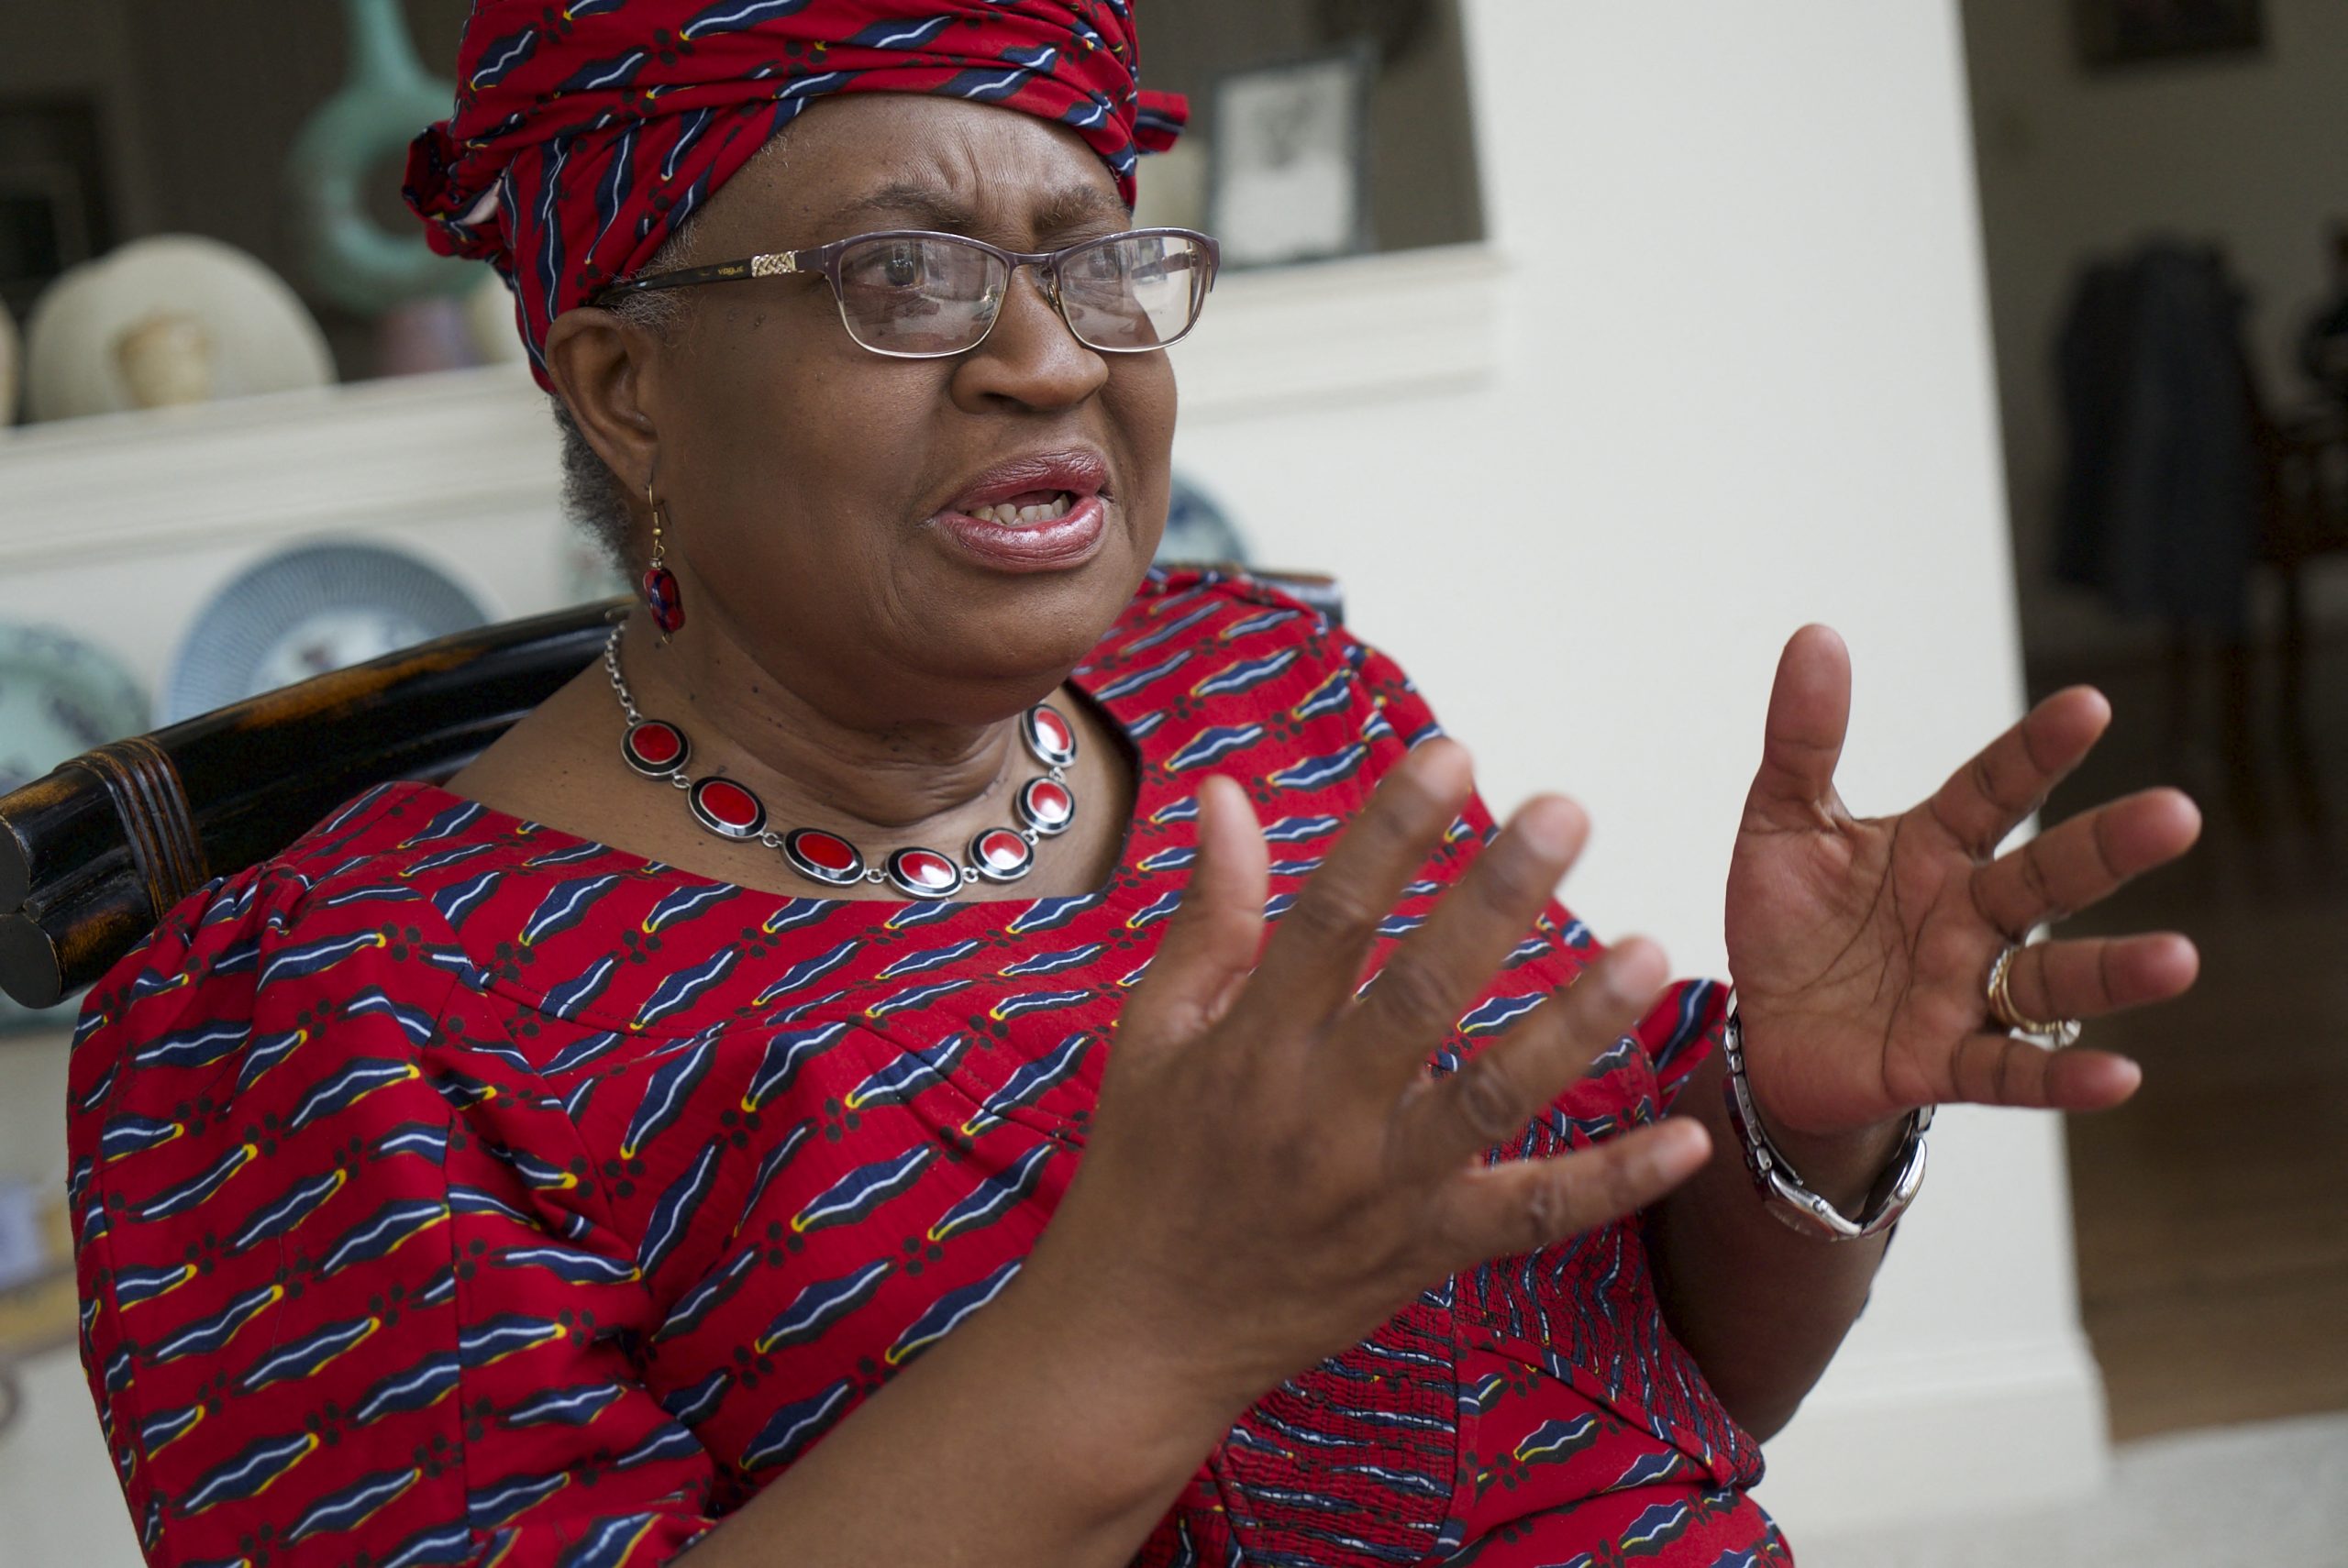 El libre comercio puede ayudar a la recuperación económica, dijo Okonjo-Iweala. Foto: Bastien Inzaurralde/AFP